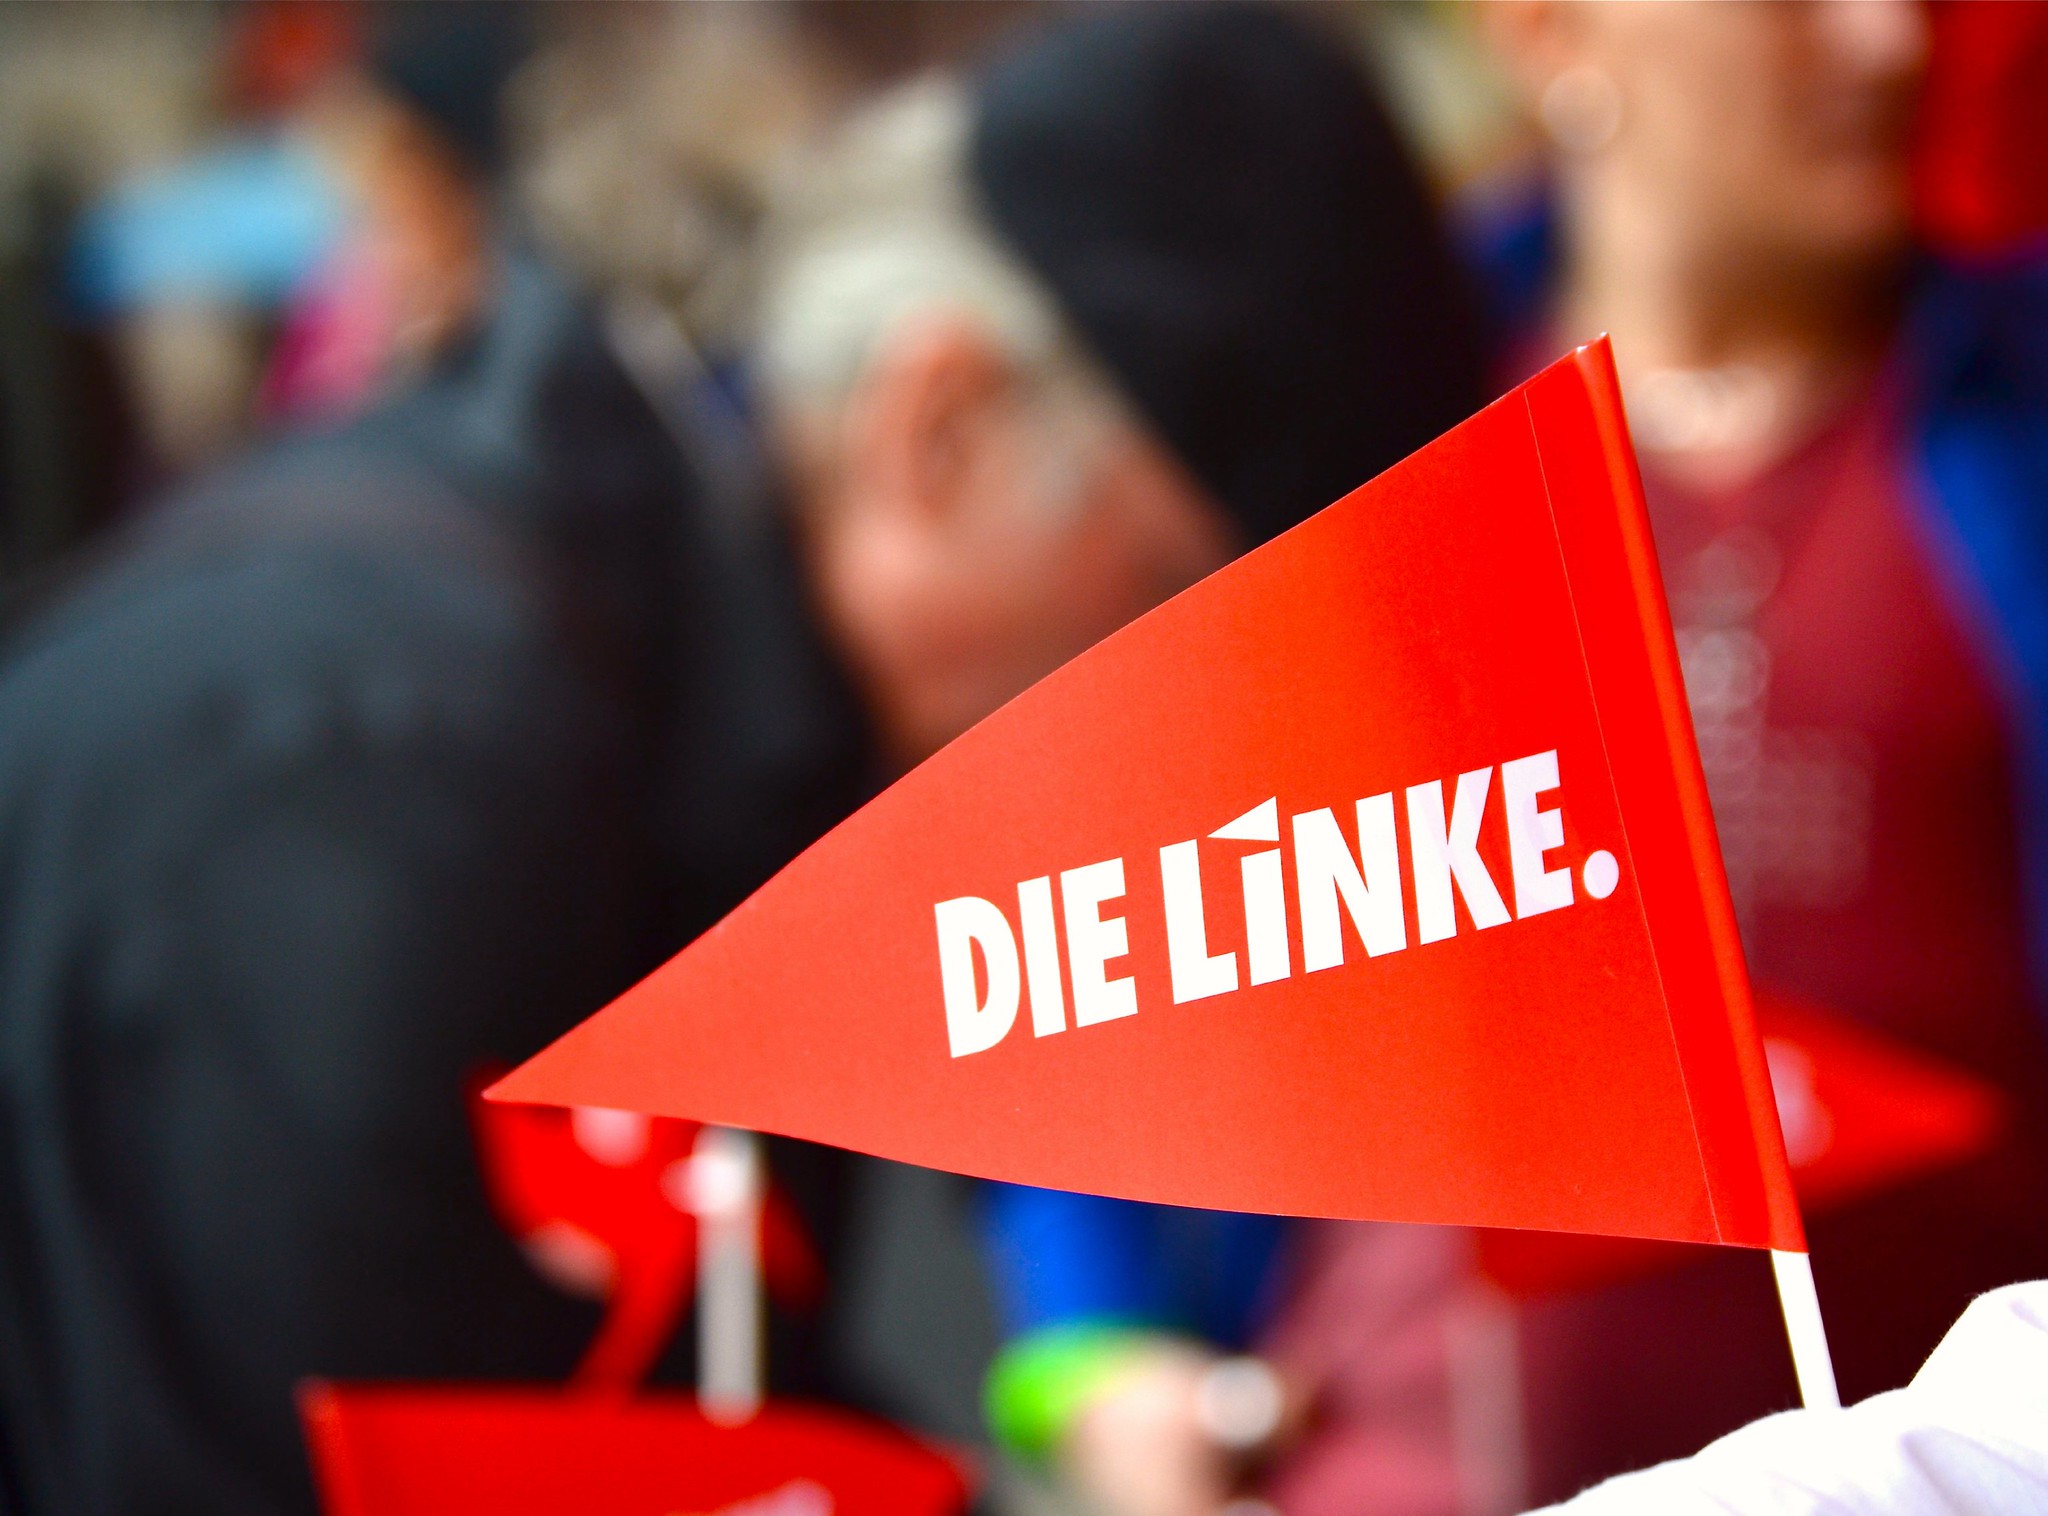 Die Linke Image DIE LINKE Nordrhein Westfalen Flickr